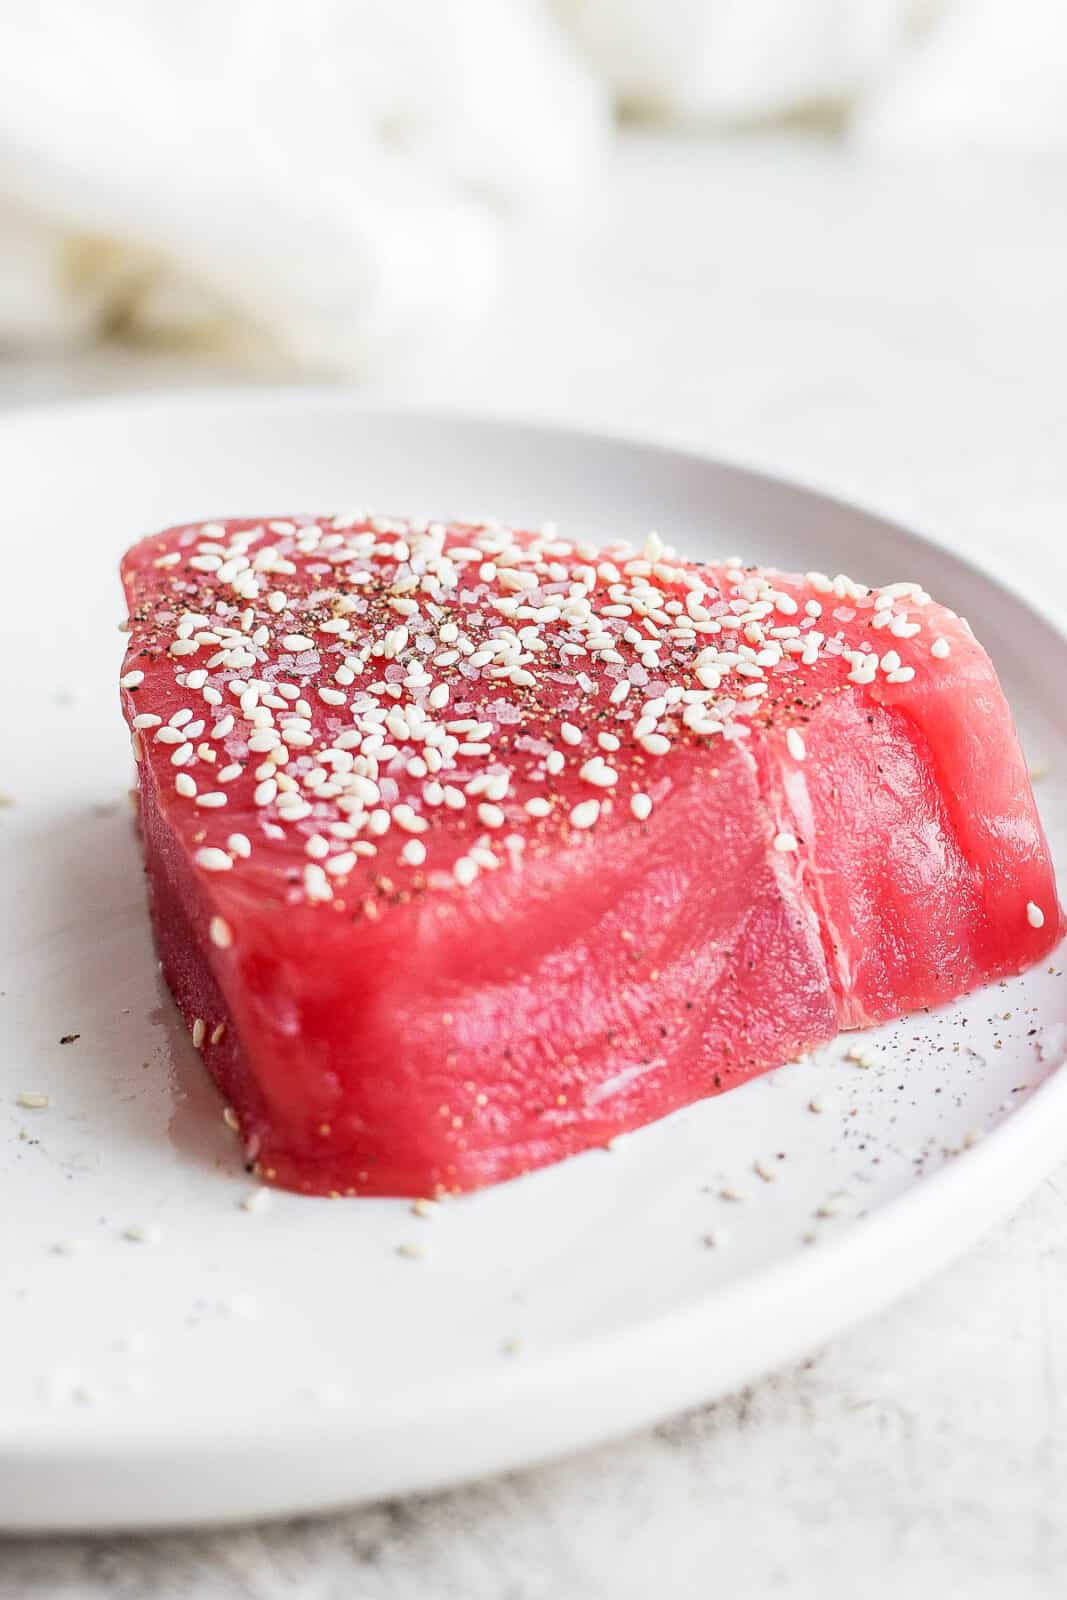 A seasoned tuna steak on a plate.